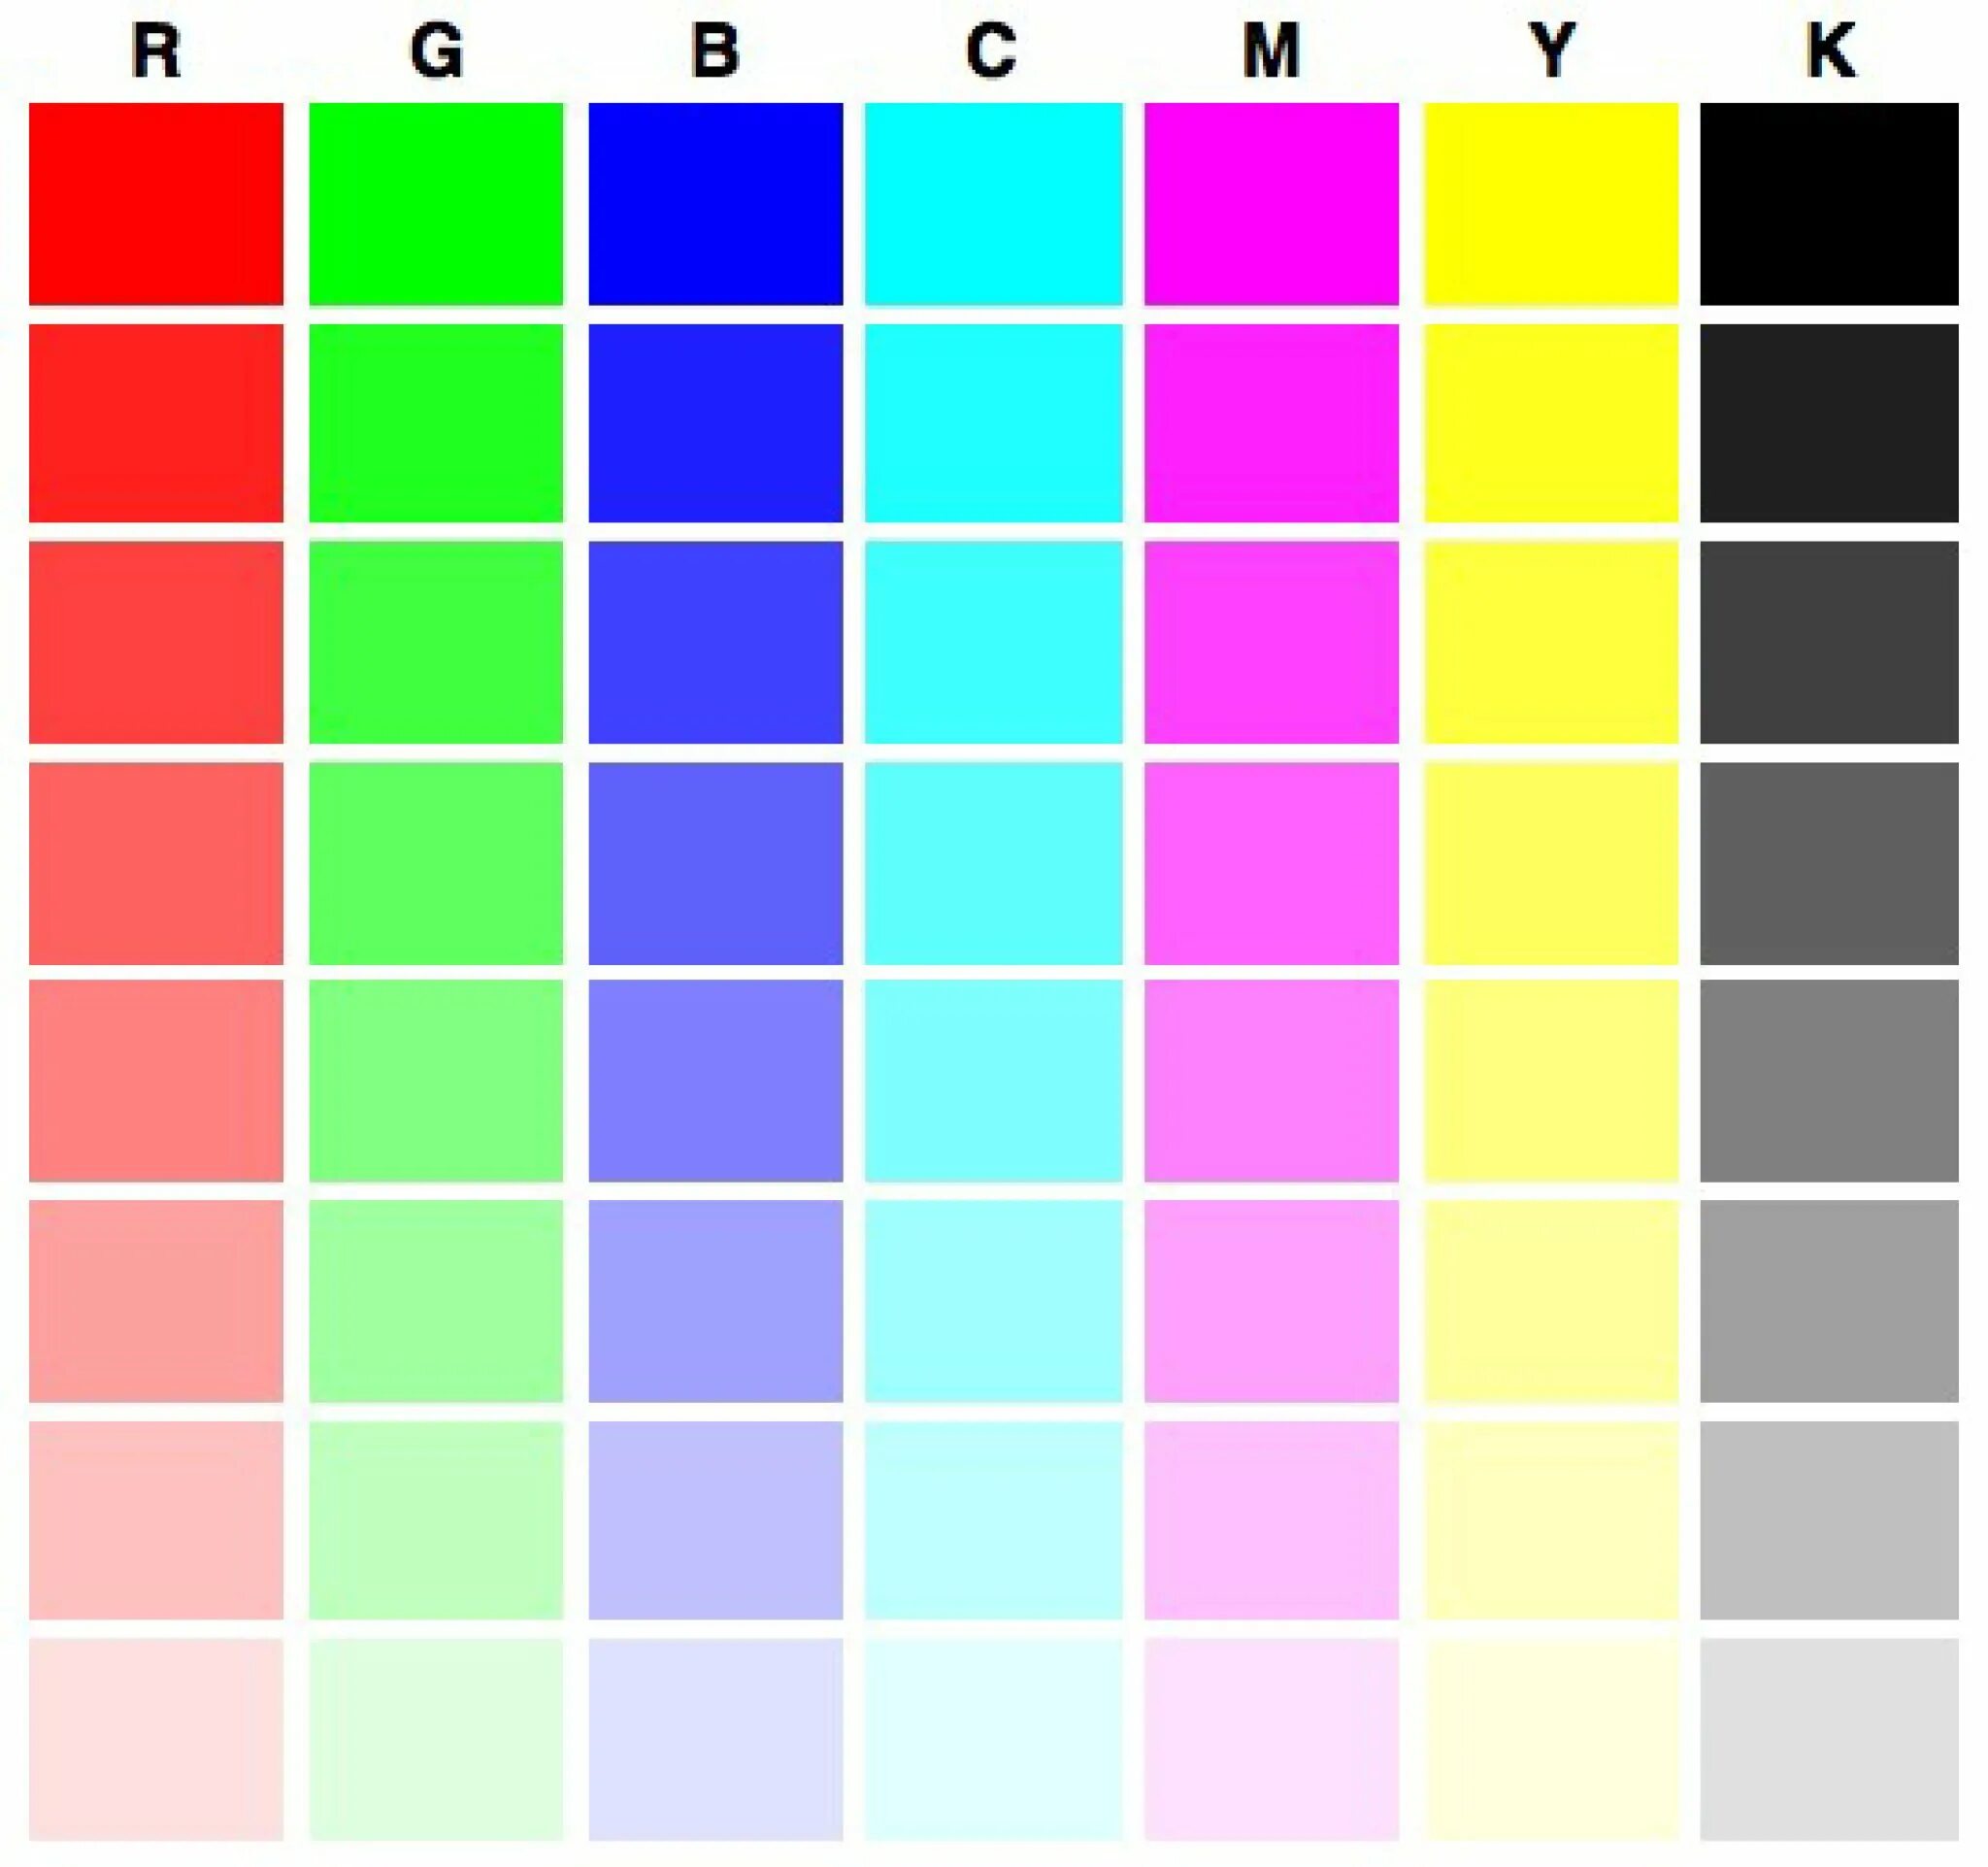 Картинка цветная для принтера. Тестовая страница для принтера Epson l800. Тест принтера Эпсон 6 цветов. Тест принтера Эпсон 4 цвета. Проверочная таблица цветов для принтера Эпсон.